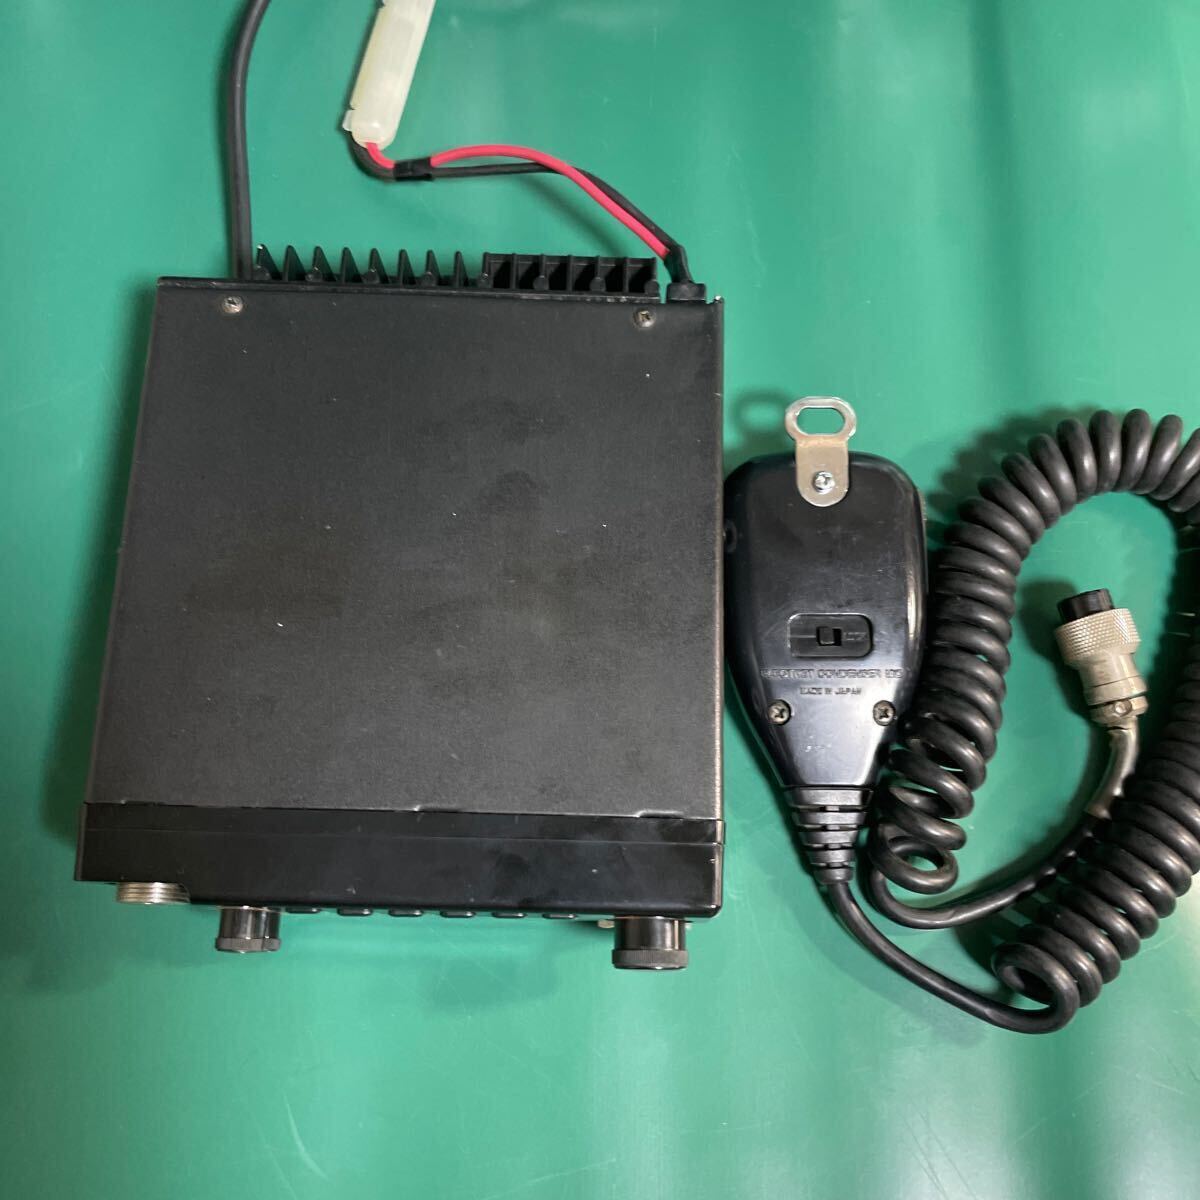 KENWOOD фирма TM-701(U/V obi ) двойной частота FM приемопередатчик рабочий товар 10W машина 